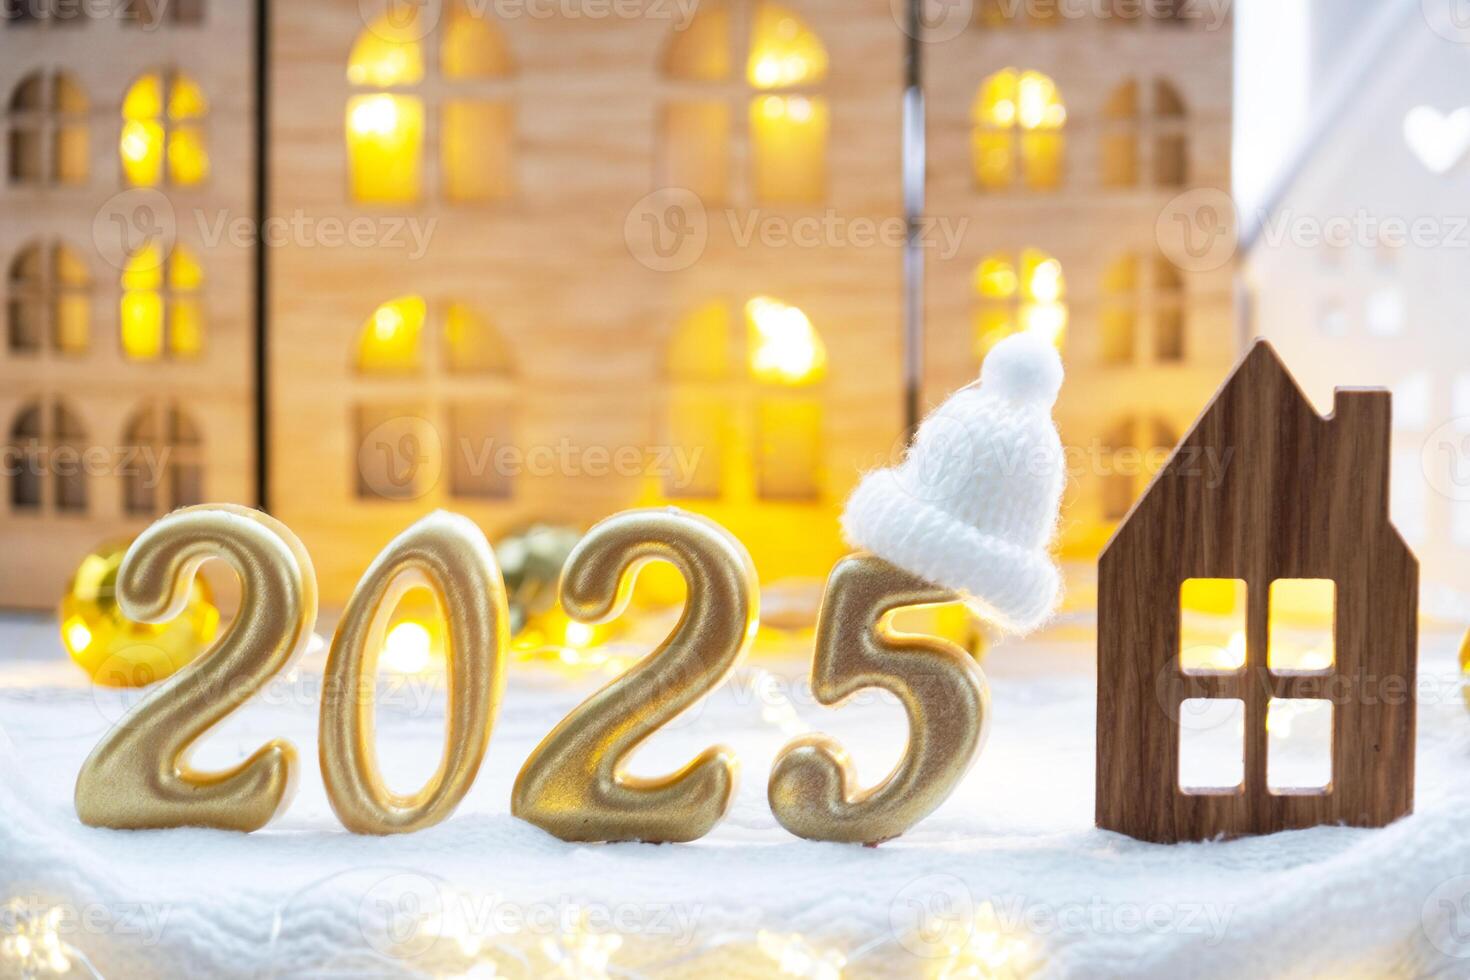 d'oro figure numero 2025 e minuscolo casa su sfondo di accogliente finestre di un' Casa con caldo leggero con festivo arredamento di stelle, neve e ghirlande. saluto carta, contento nuovo anno, accogliente casa foto